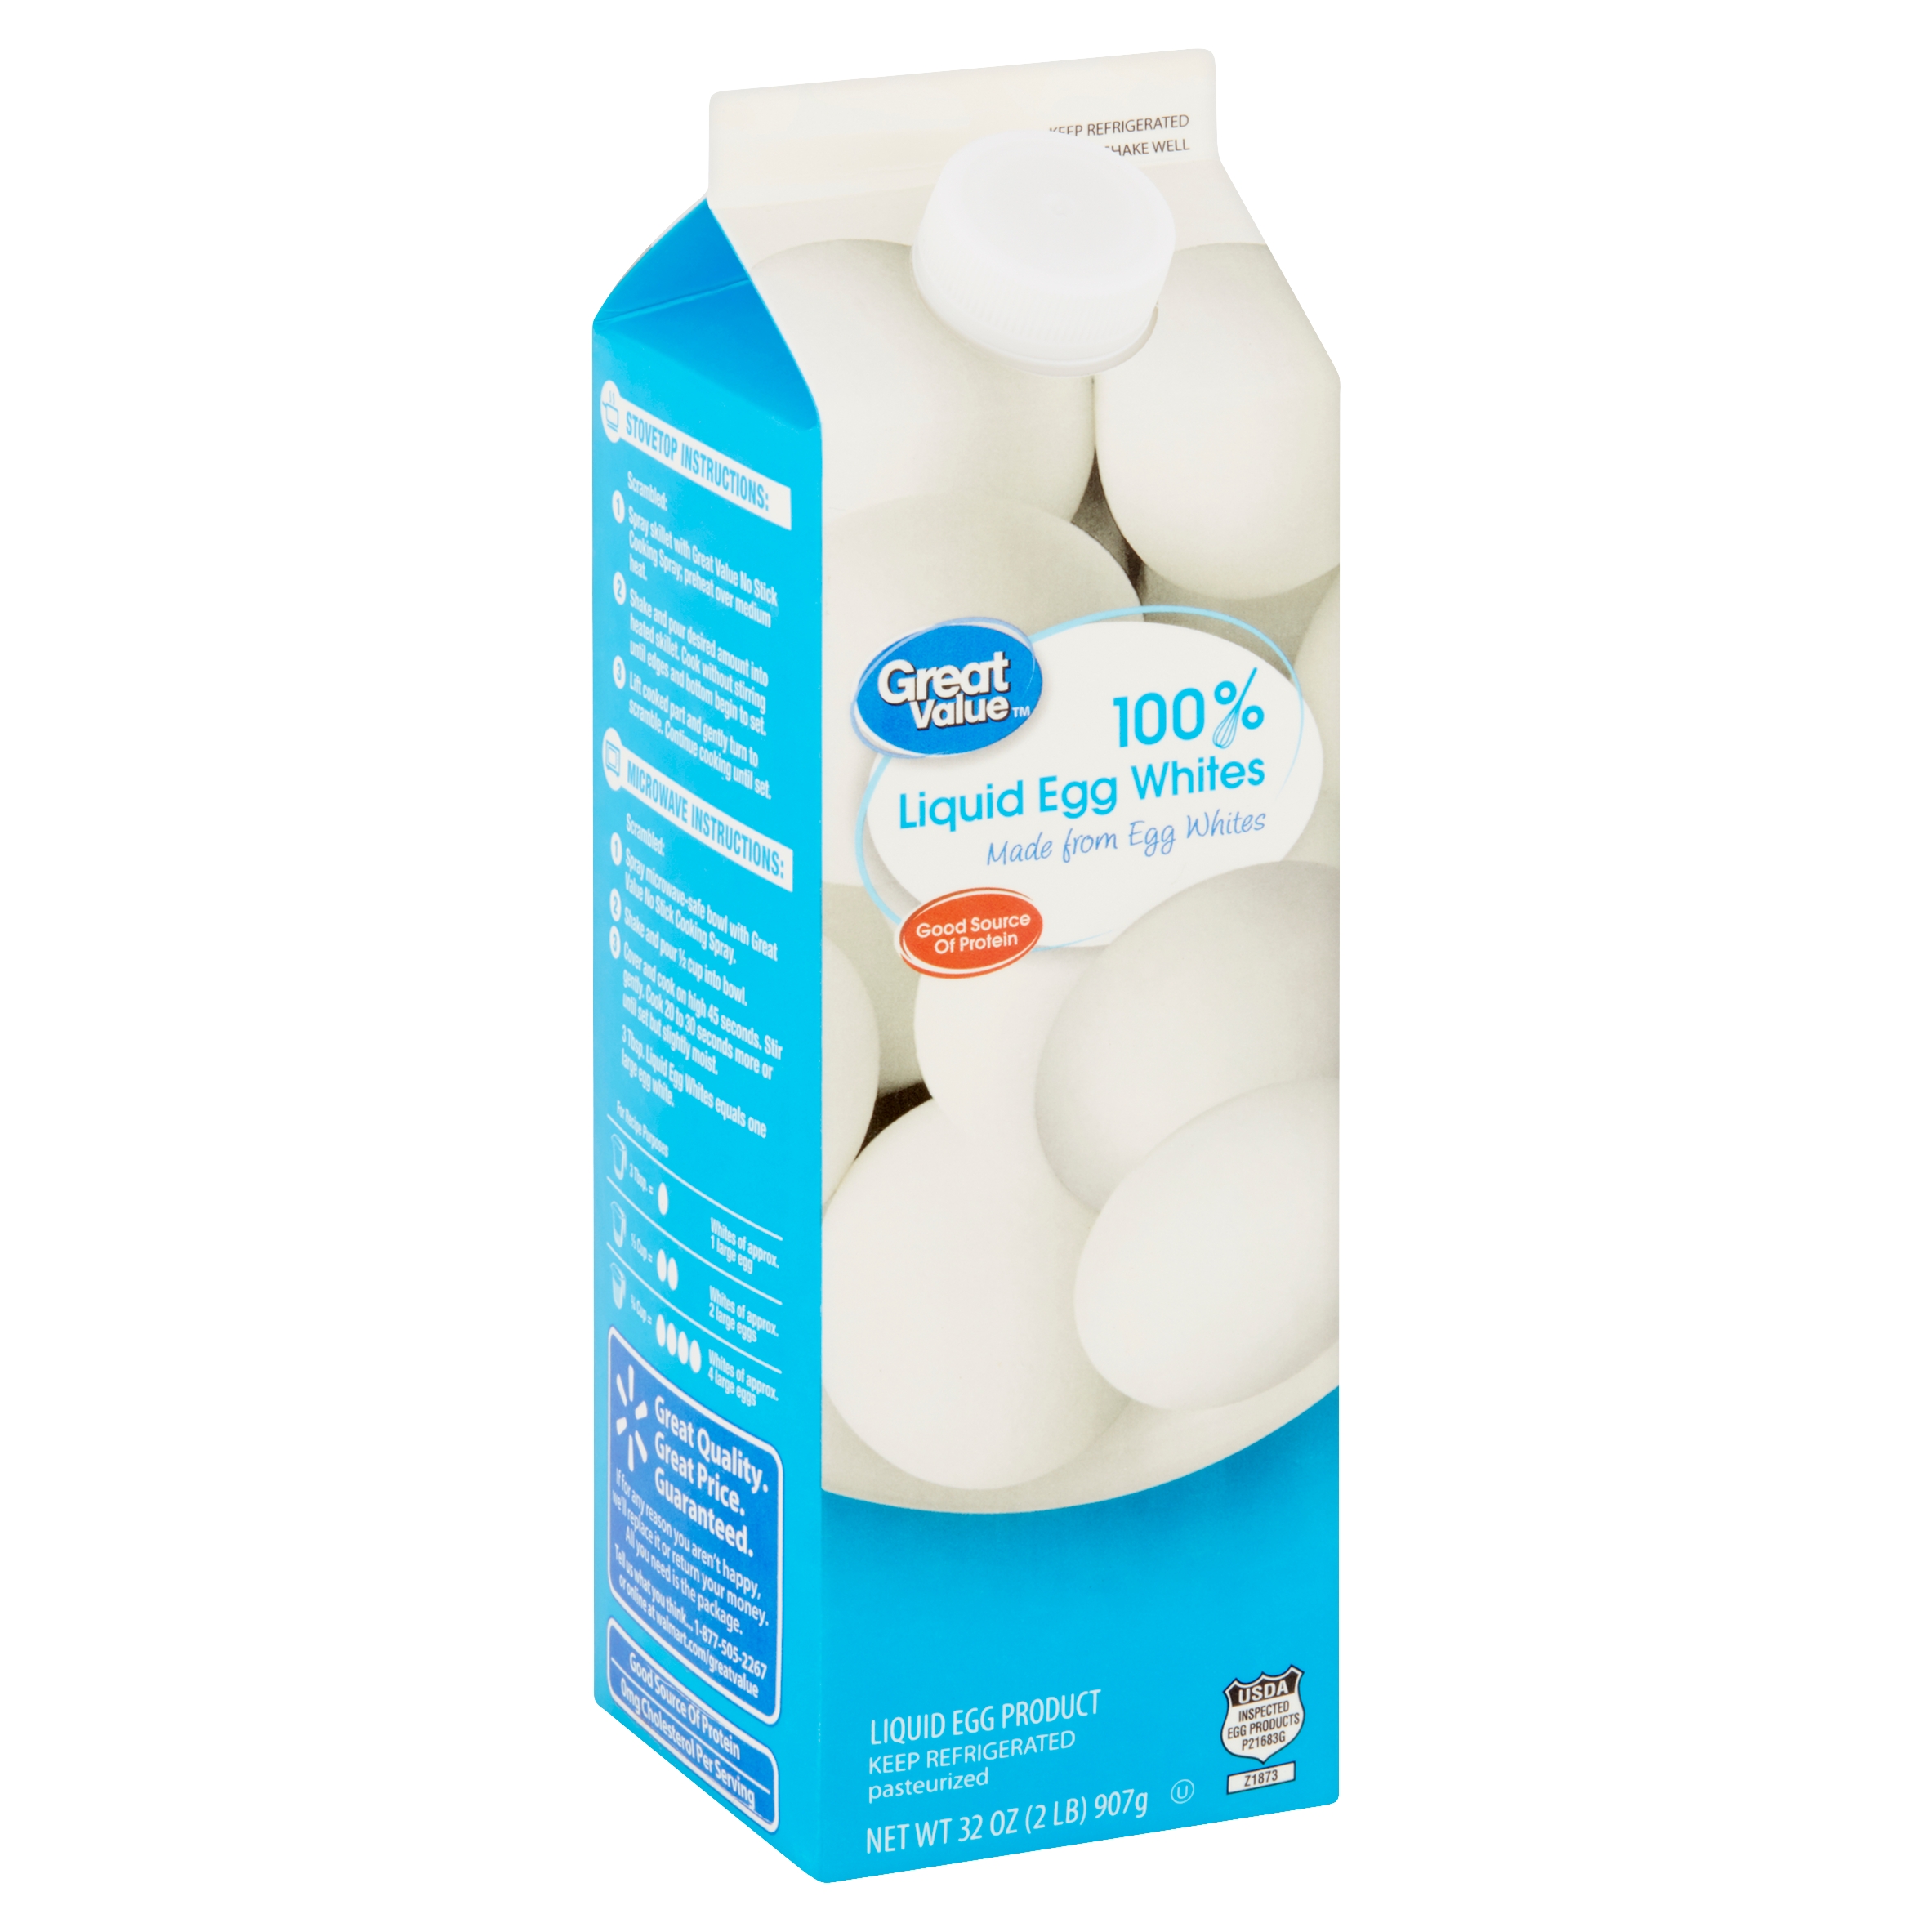 Great Value 100% Liquid Egg Whites 32 Oz Image